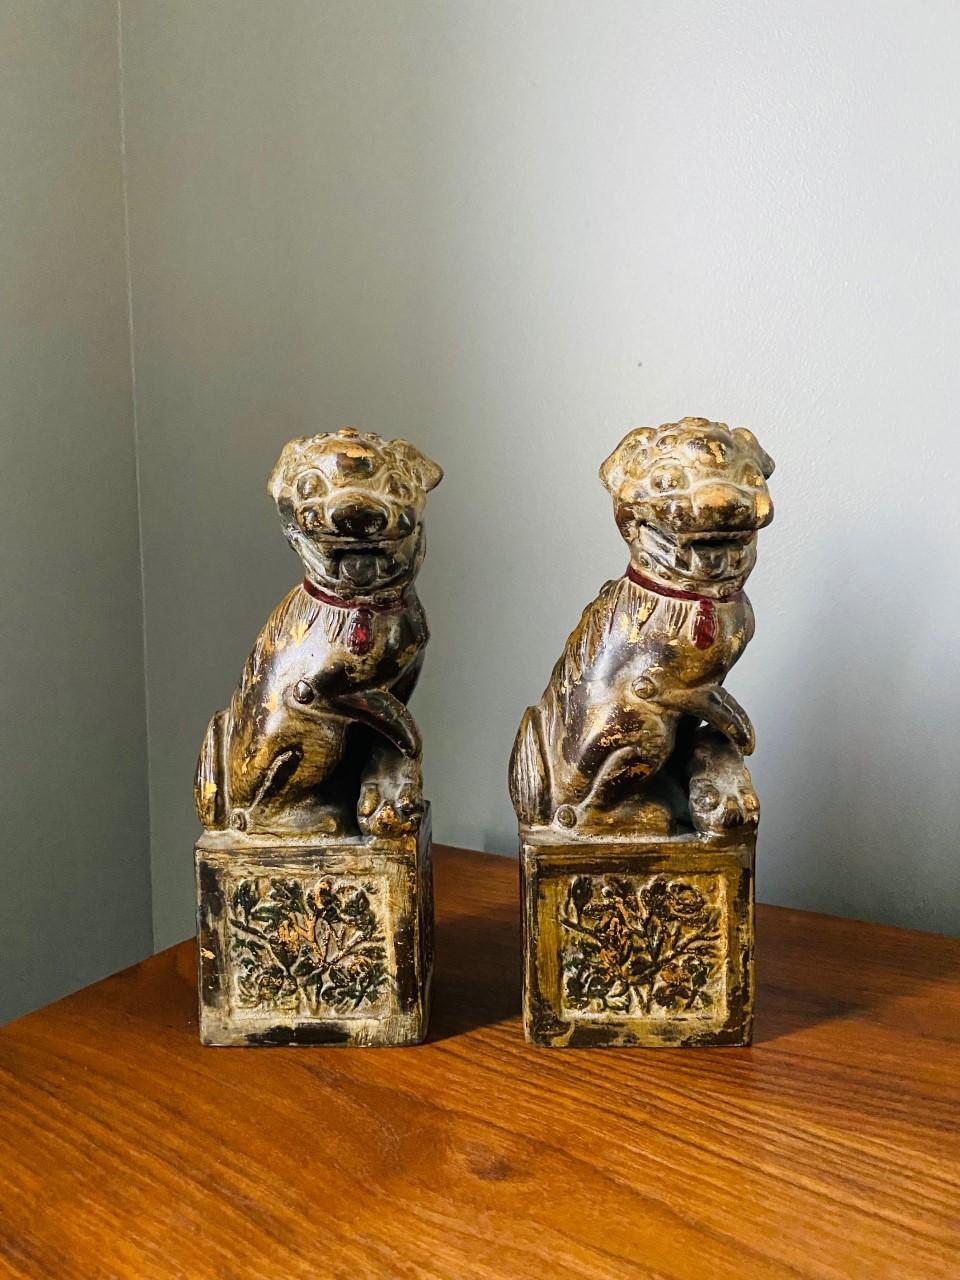 Incroyable paire de chiens en bronze vintage des années 1970 de Neiman Marcus Japan. Les lions gardiens, également connus sous le nom de komainu, shishi ou foo dogs, sont des créatures intimidantes, mythiques, ressemblant à des lions, que l'on